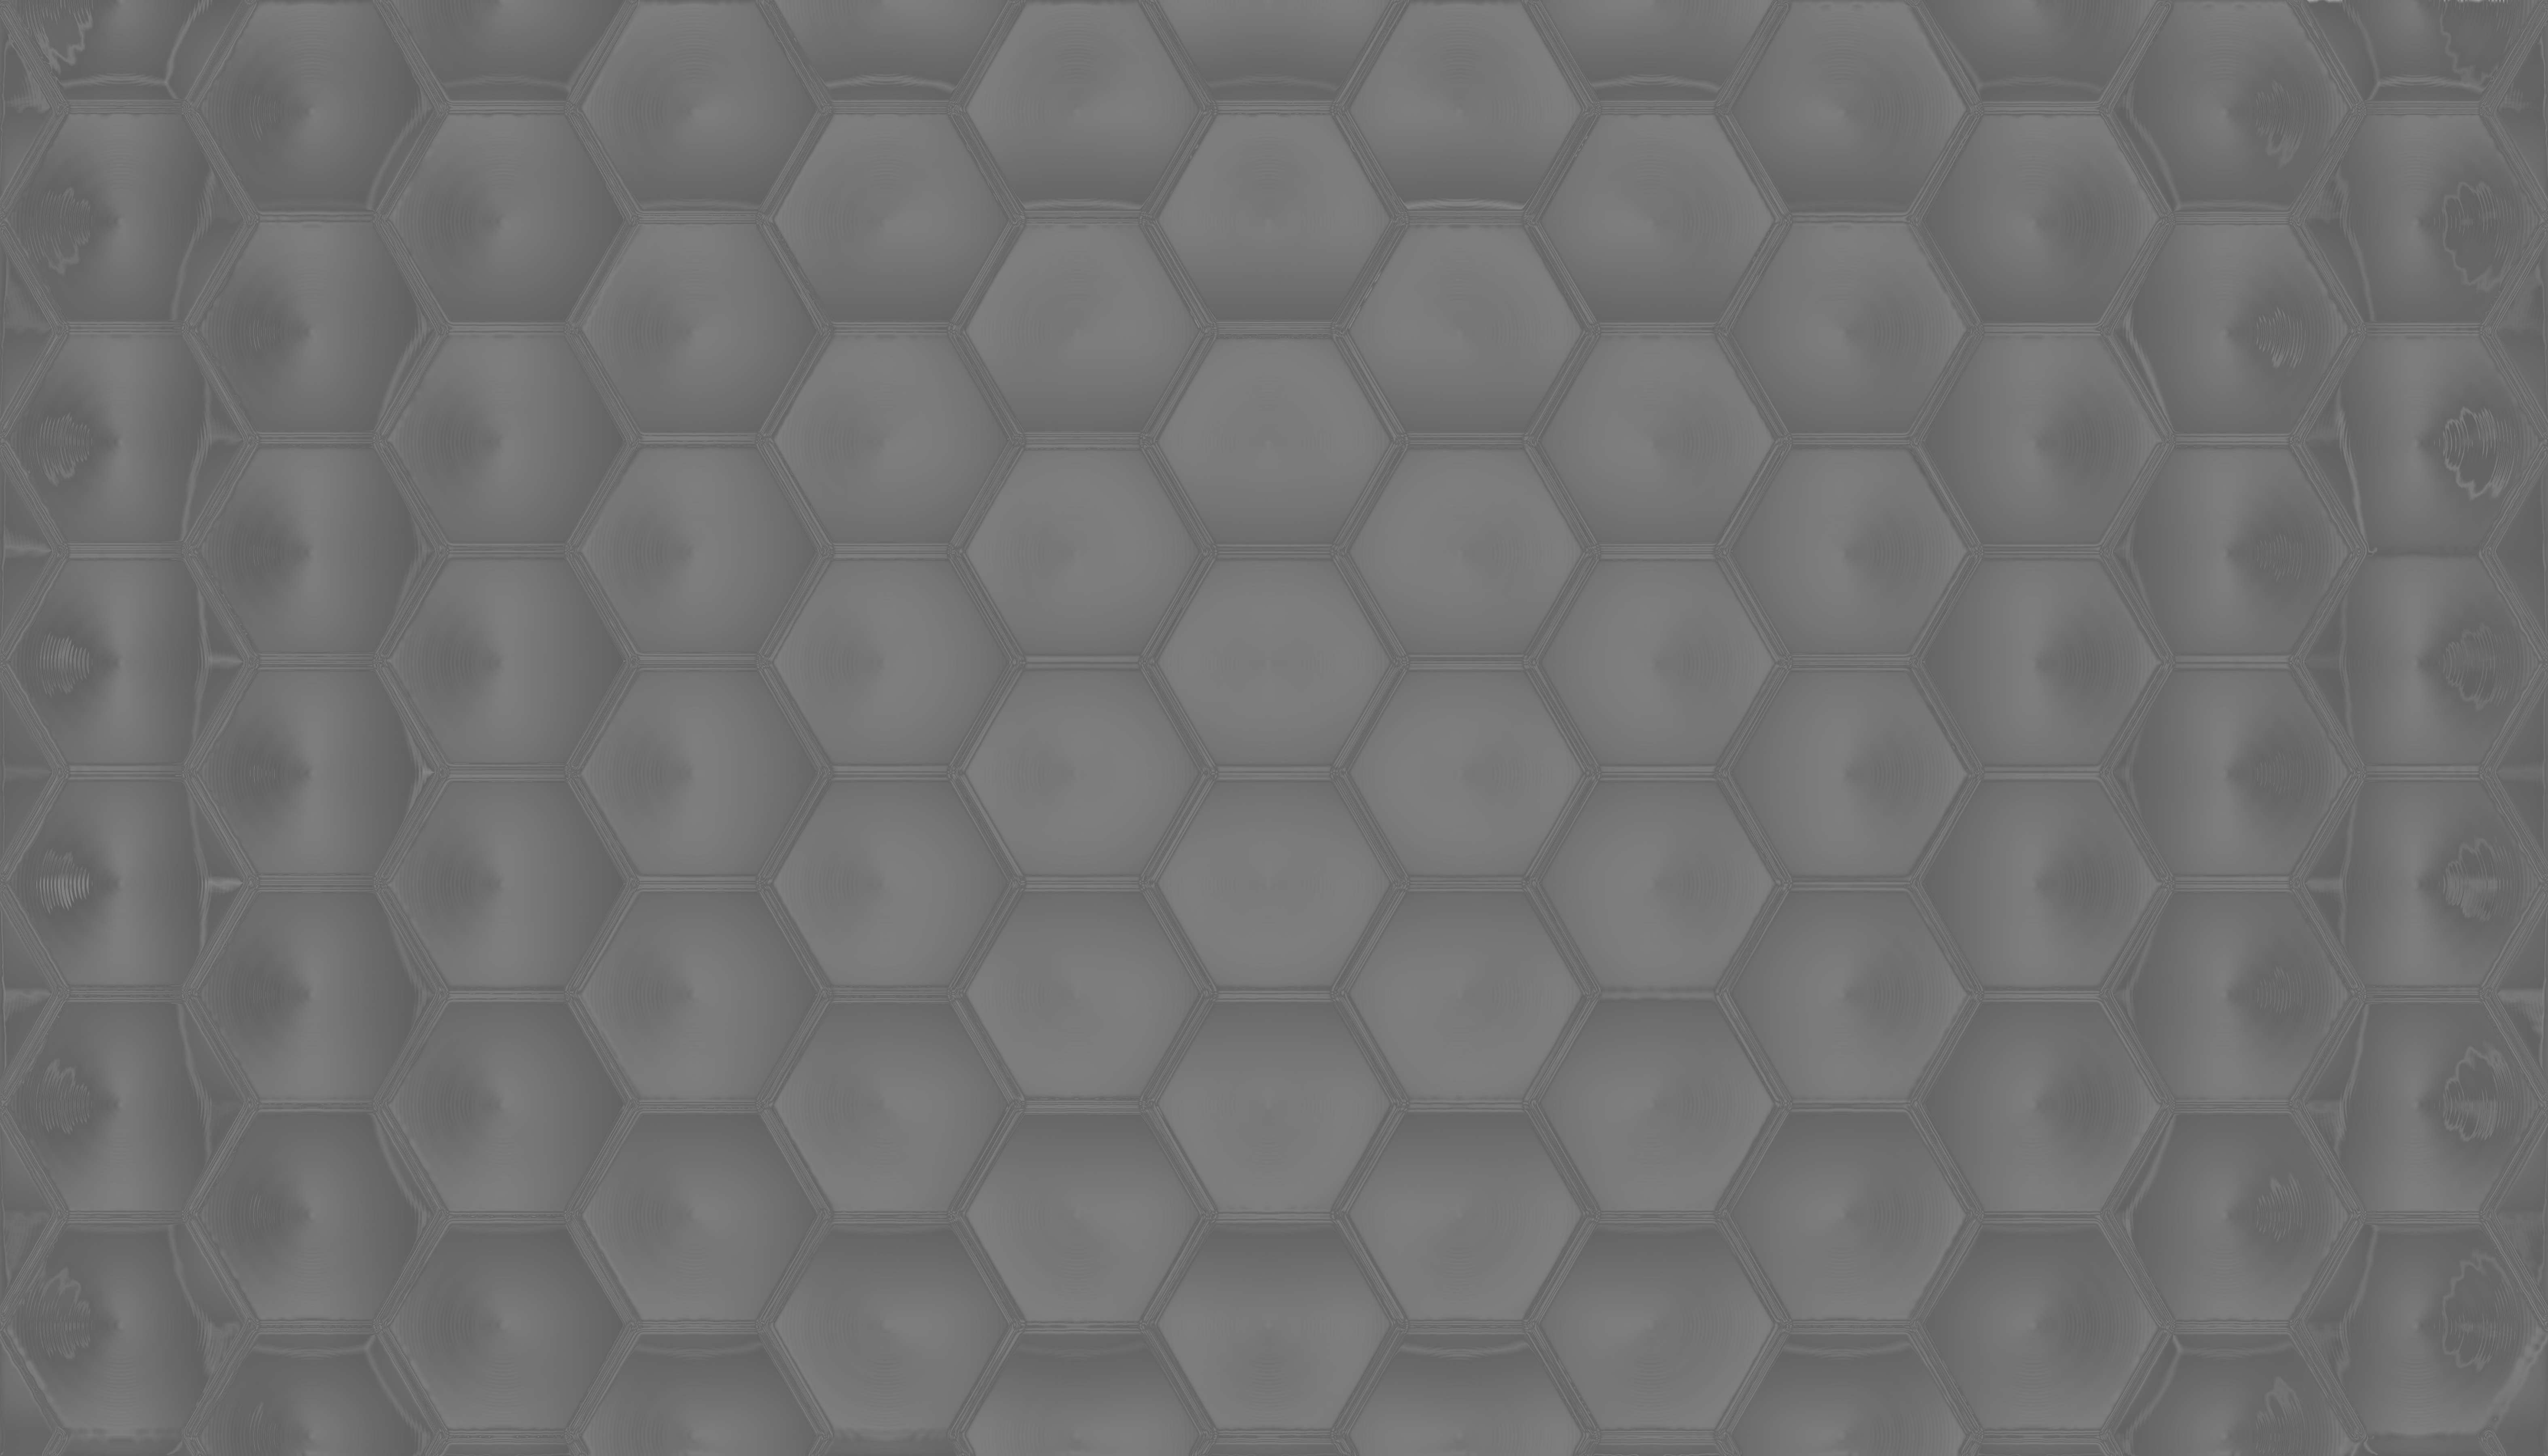 3D Hexagons by demabirak